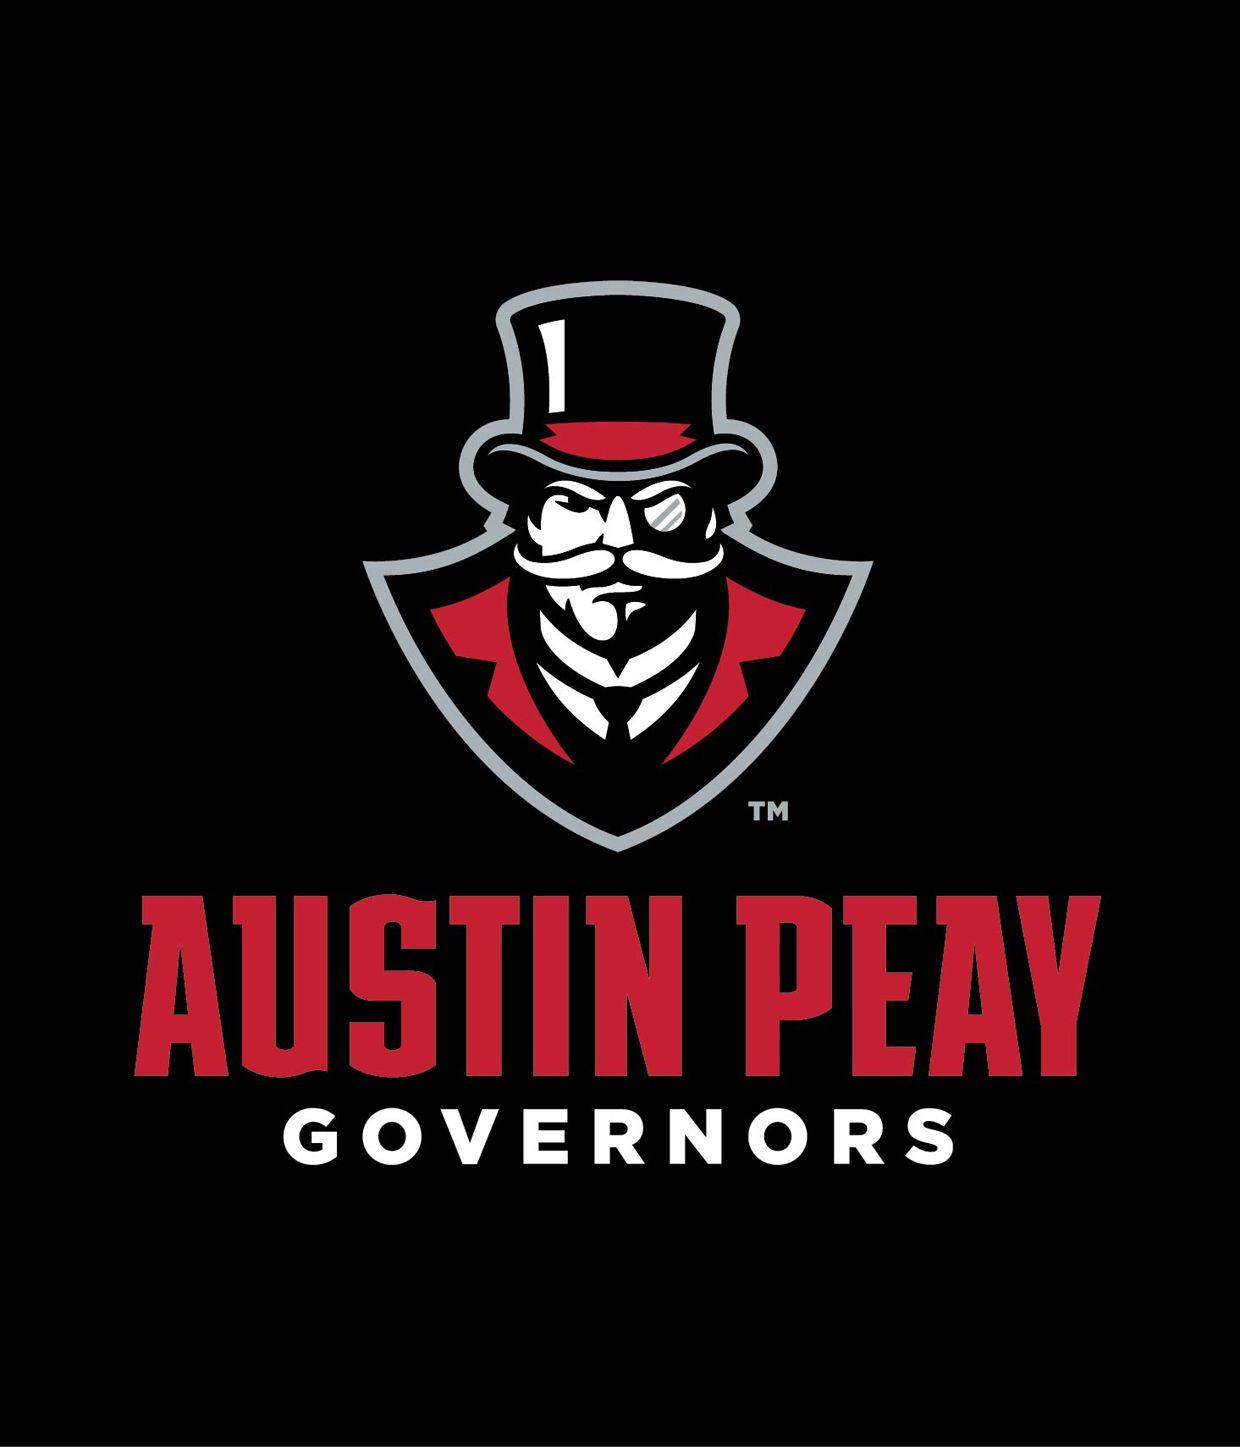 APSU Logo - APSU Governors reveal new visual identity